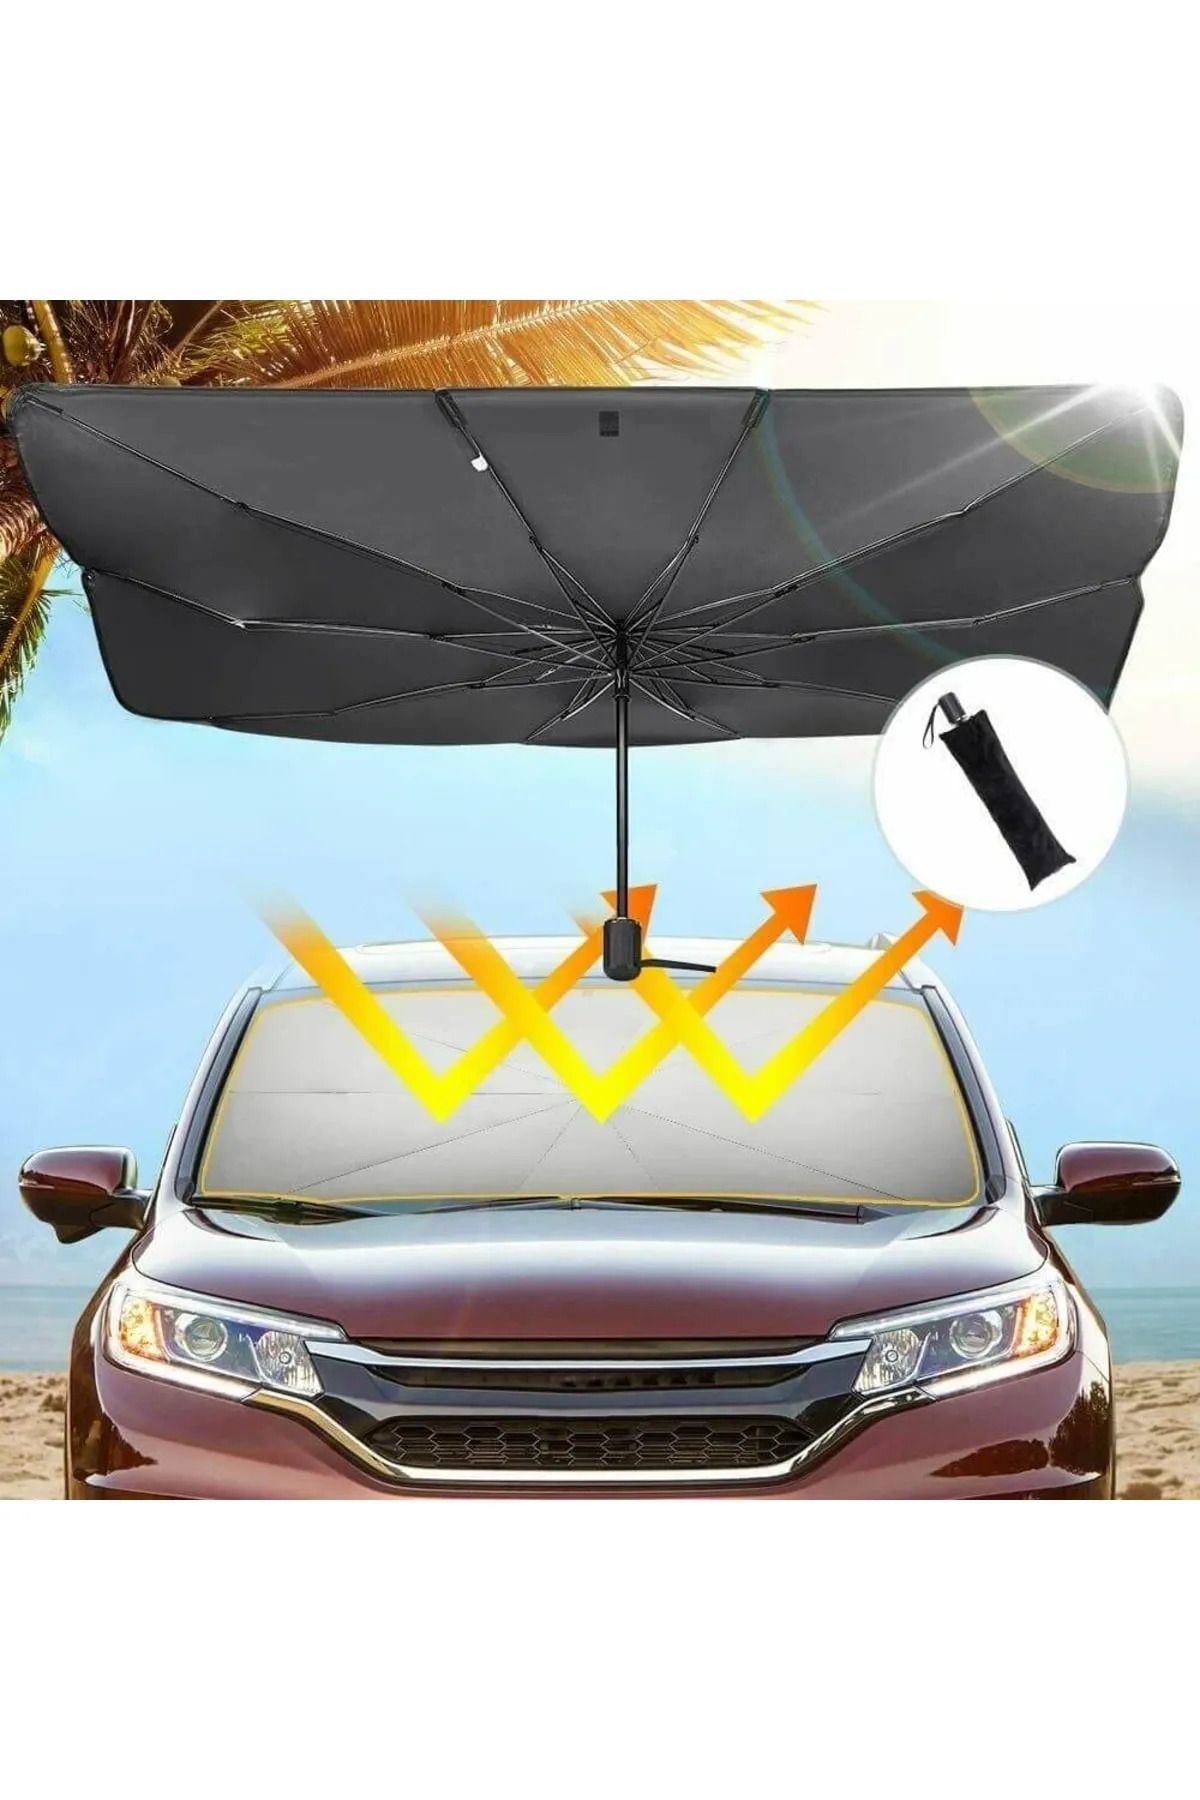 Universal Mini Cooper Araba Ön Cam Güneşlik Katlanabilir Güneşlik Şemsiye Ön Cam Gölgelik